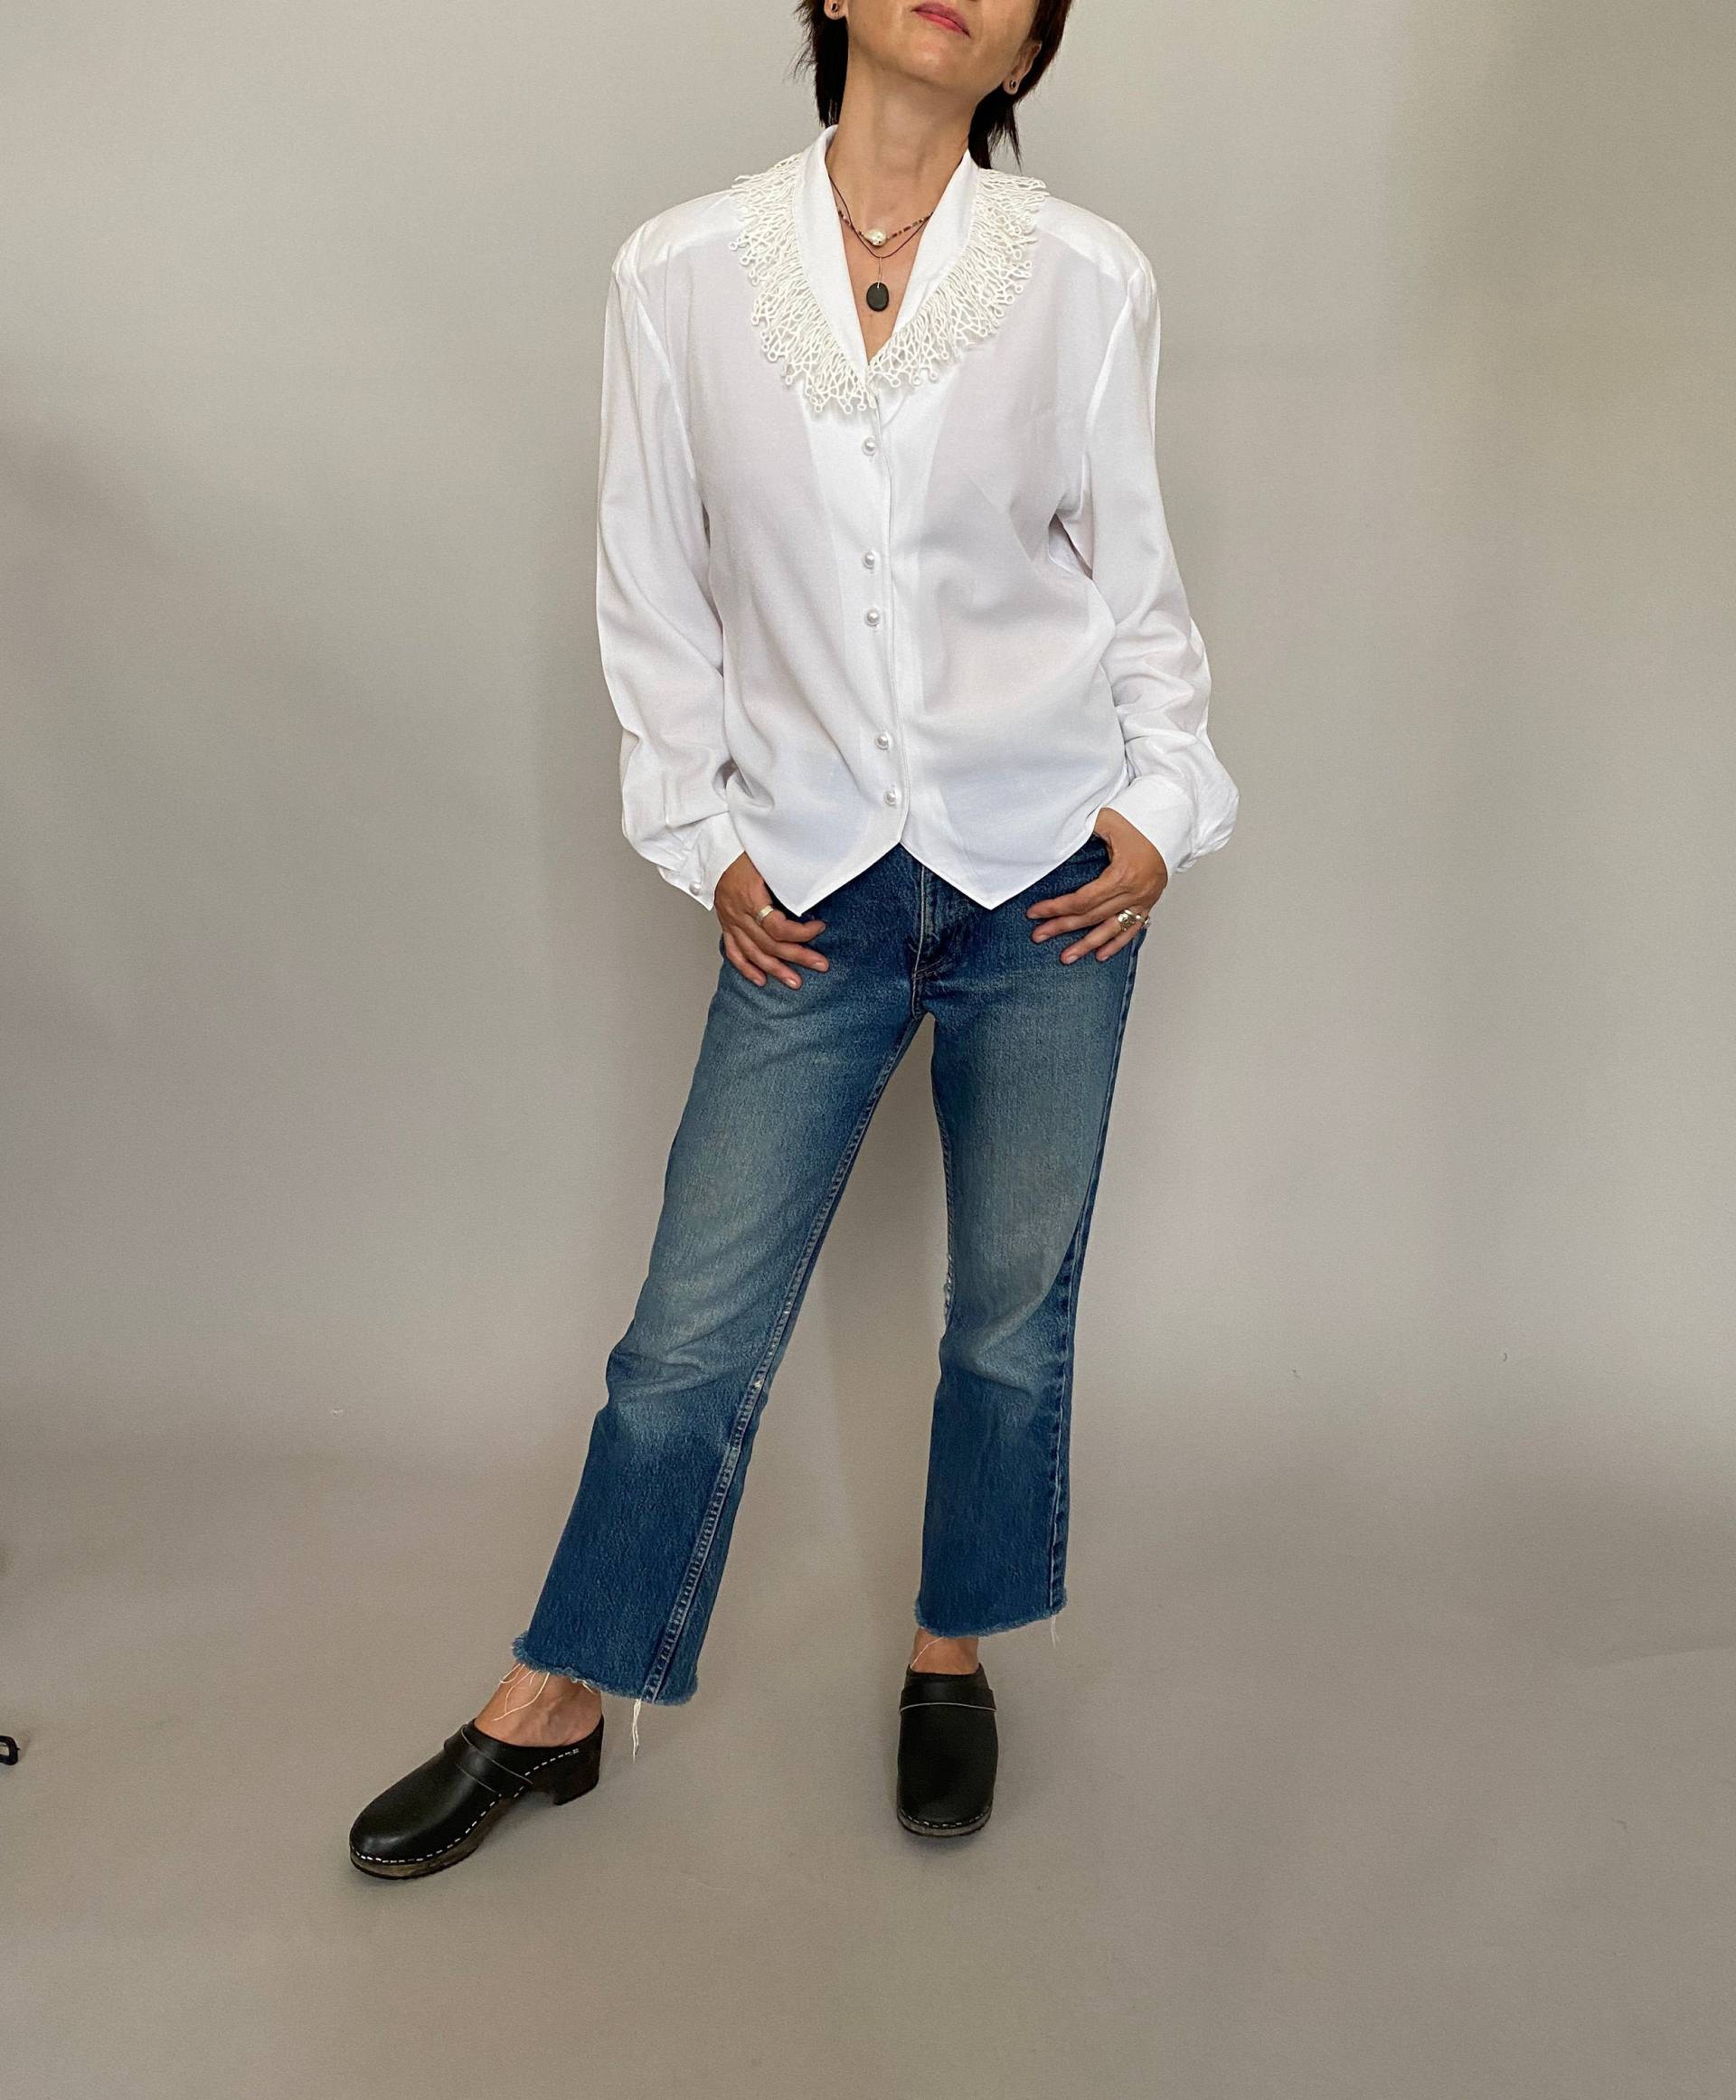 Vintage Weiße Bluse Für Frauen Gr. M - L | Weiße Mit Oversized Kragen von whiteaporter